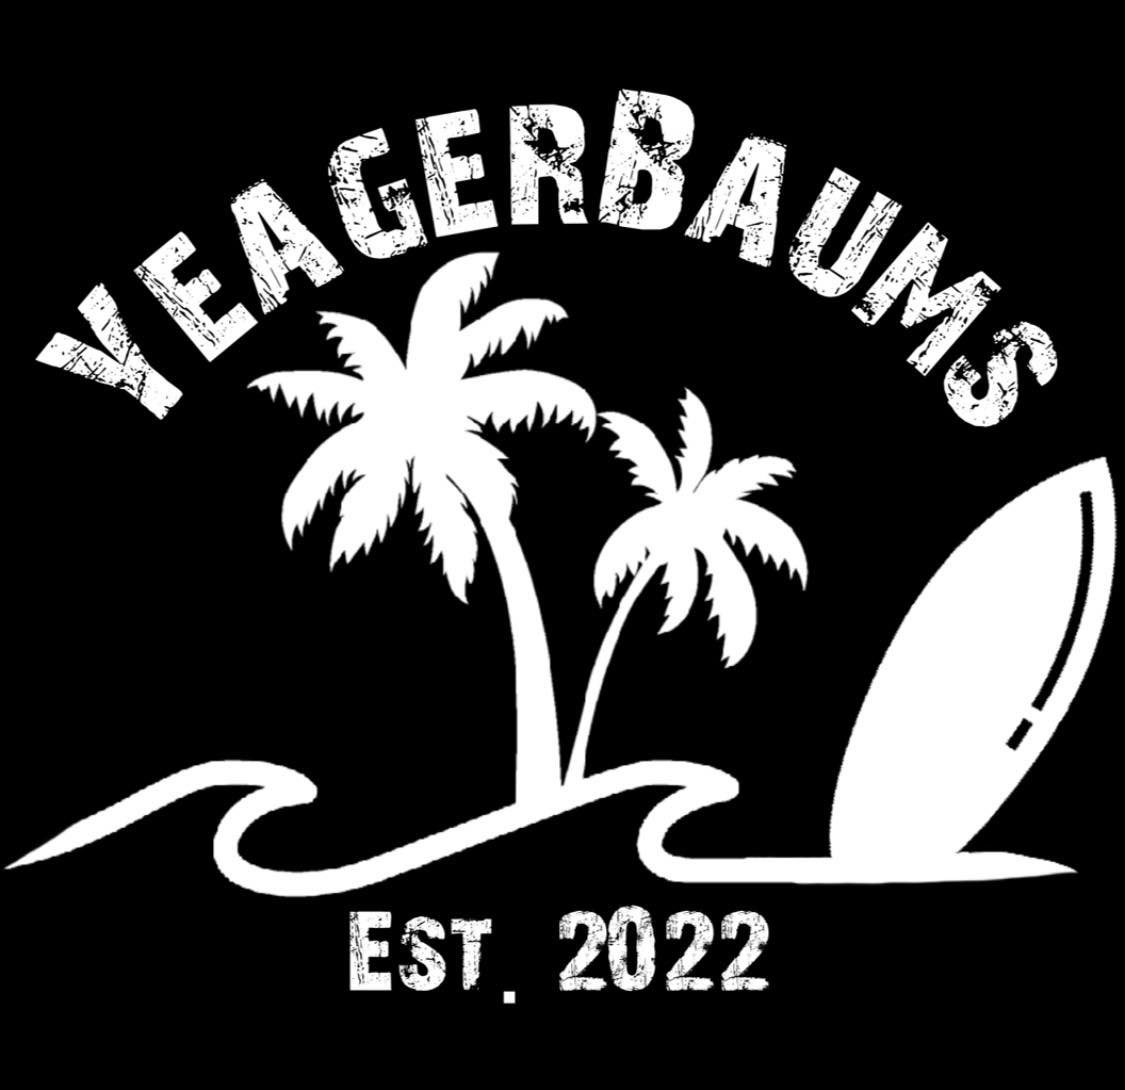 yeagerbaums logo.jpg